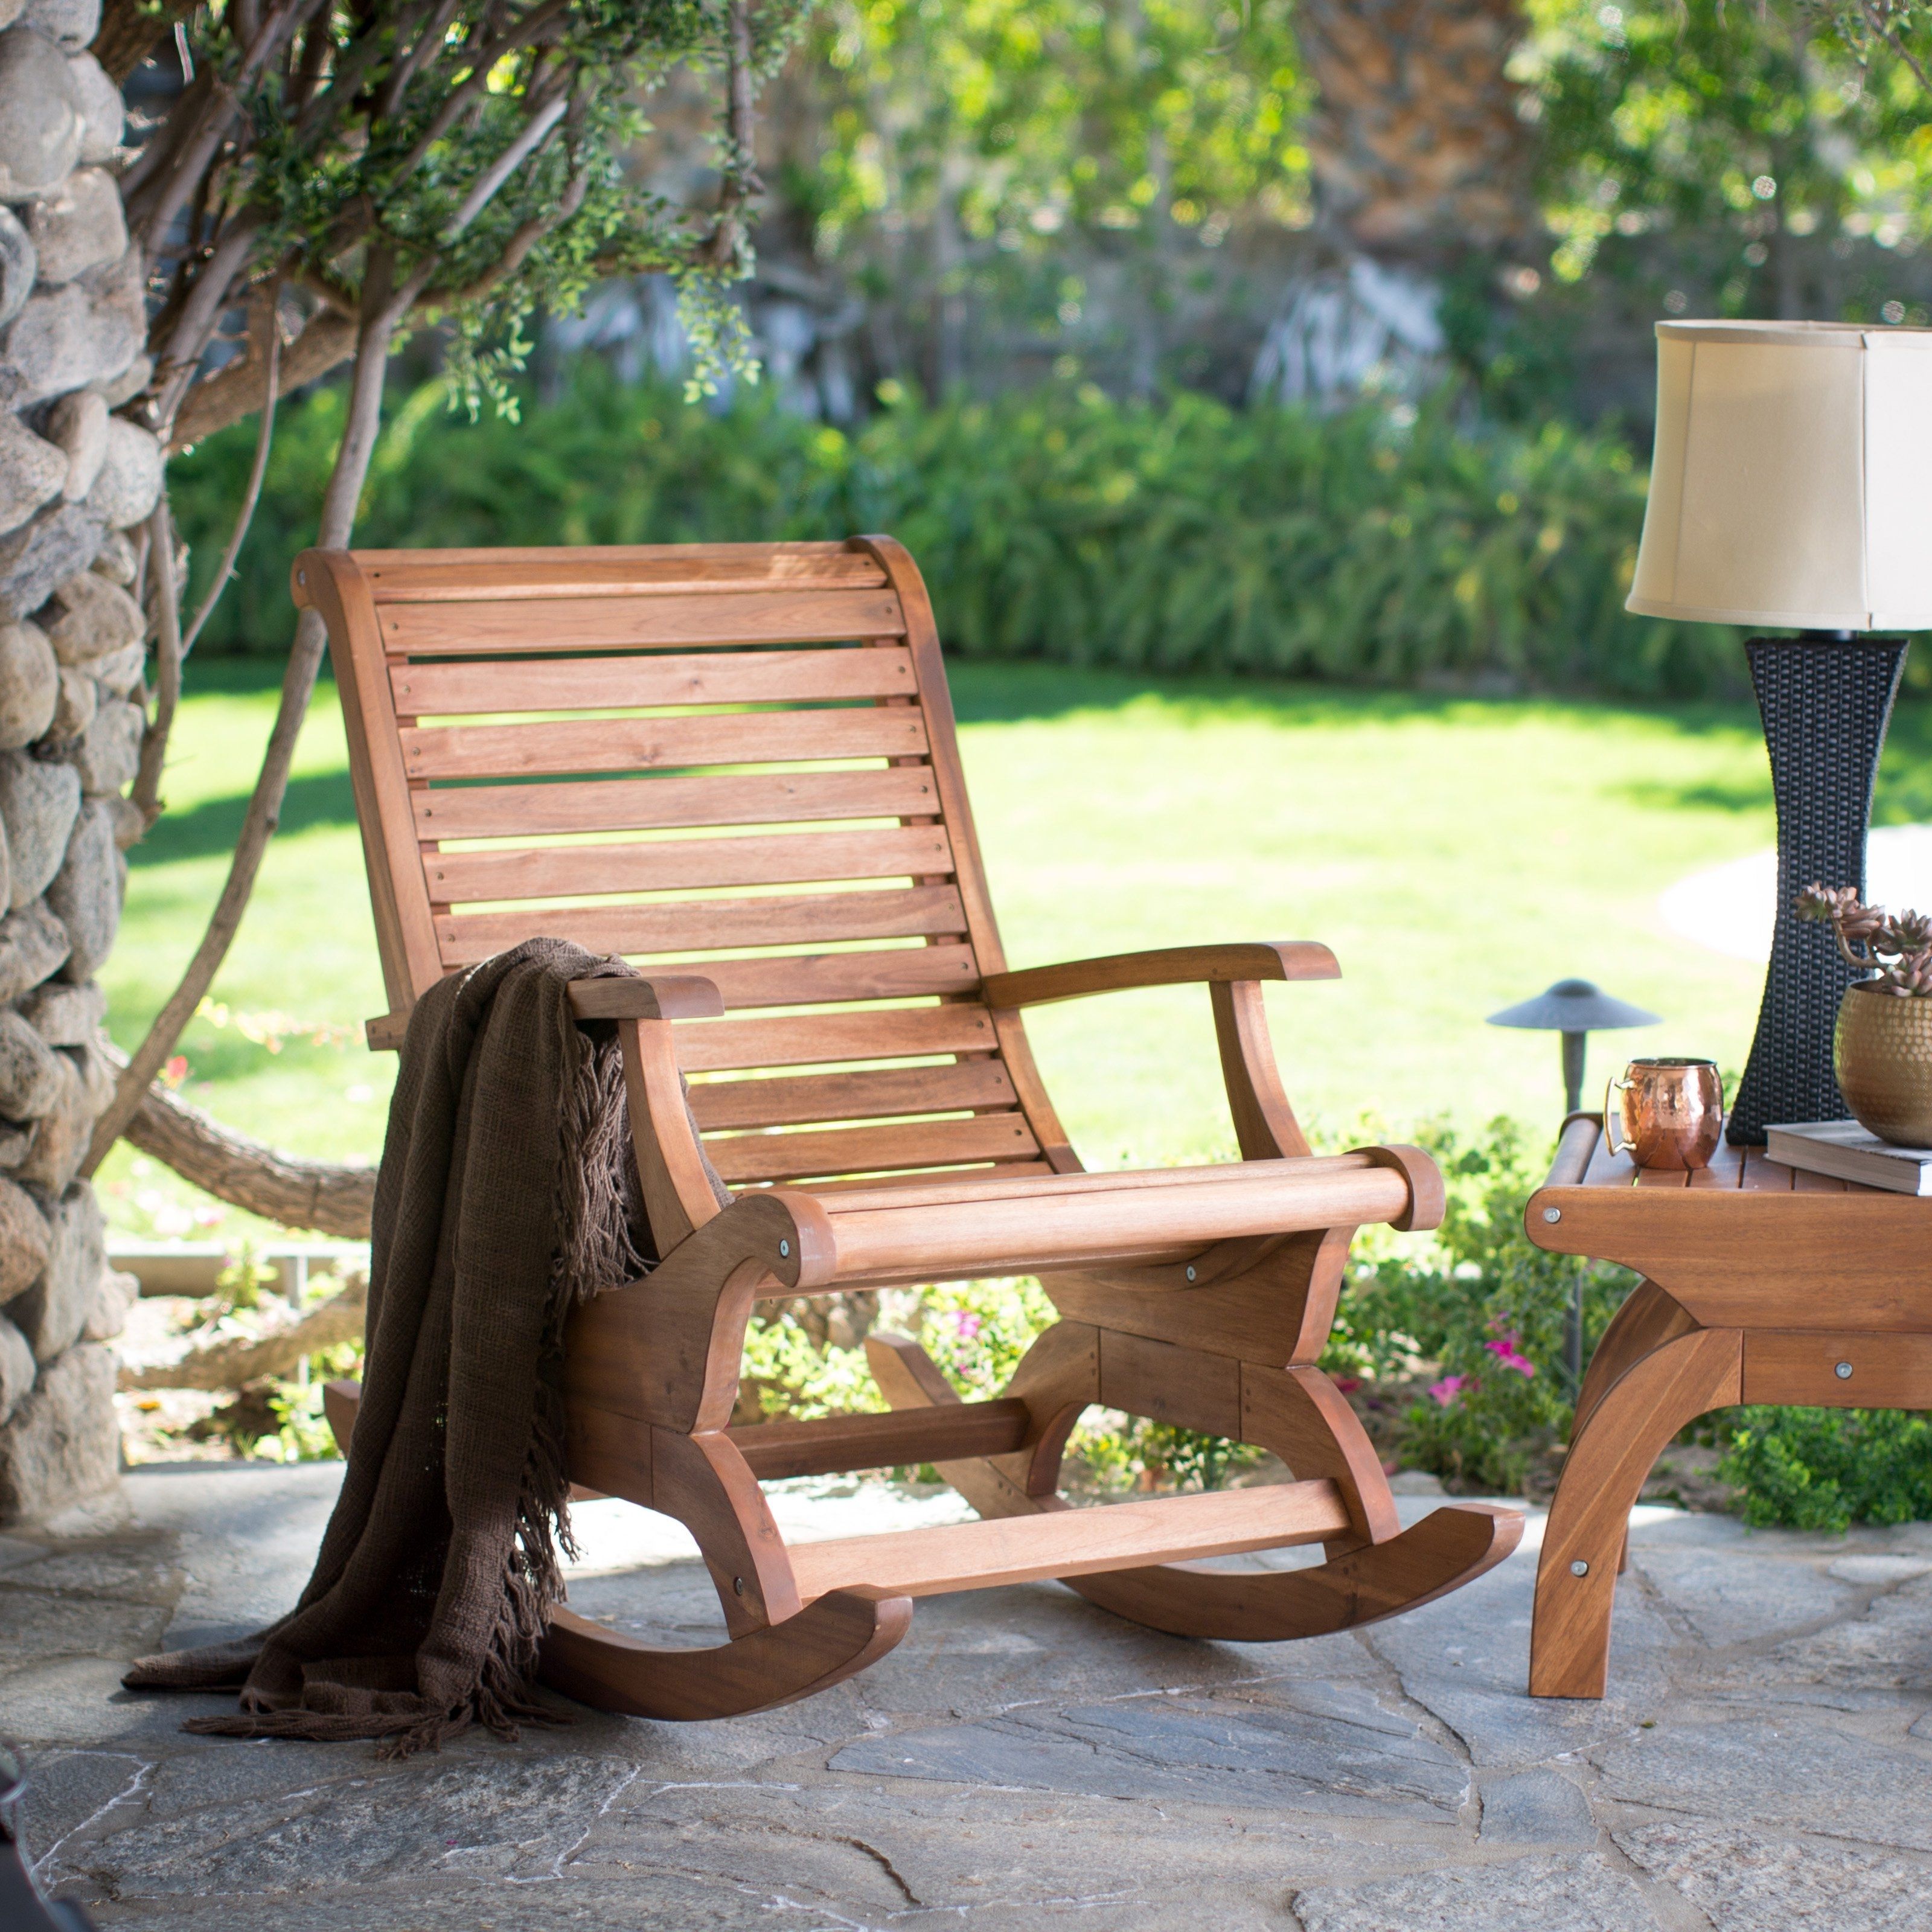 2018 Belham Living Avondale Oversized Outdoor Rocking Chair – Natural Within Outdoor Rocking Chairs With Table (View 2 of 15)